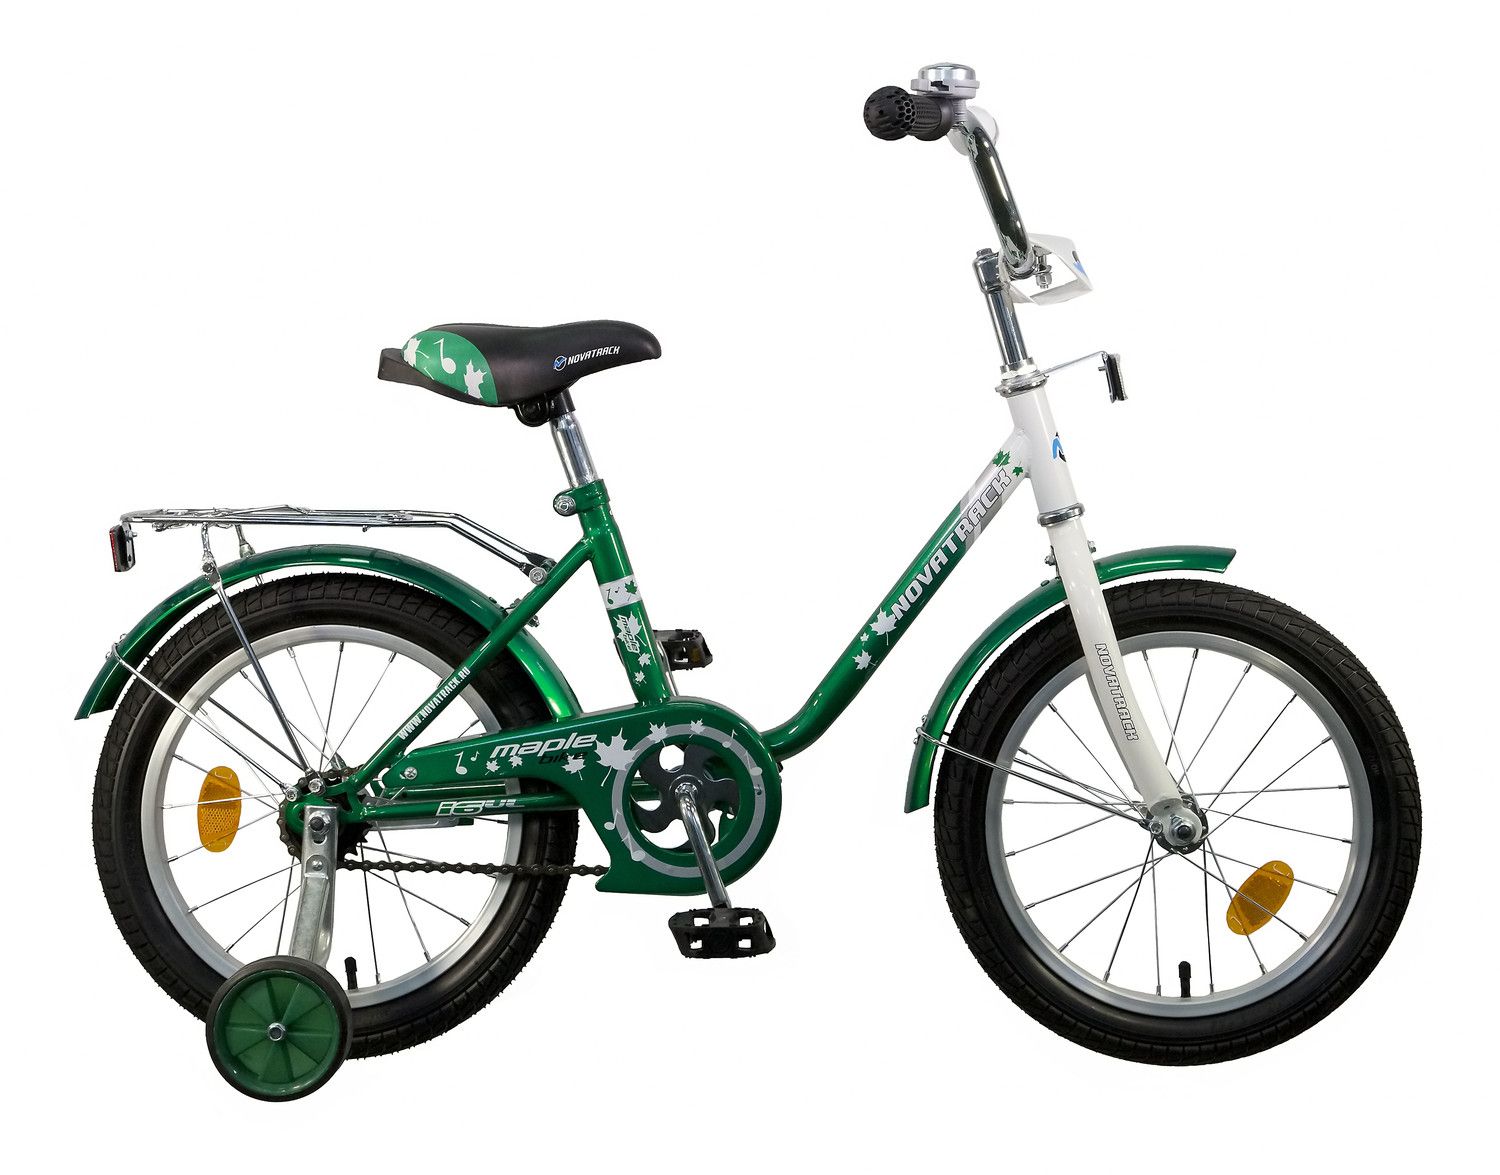 Купить велосипед в таганроге. Велосипед детский Новатрек 16. Детский велосипед Novatrack Maple 16. Велосипед Новатрек детский зеленый. Двухколёсный велосипед Нова трек.